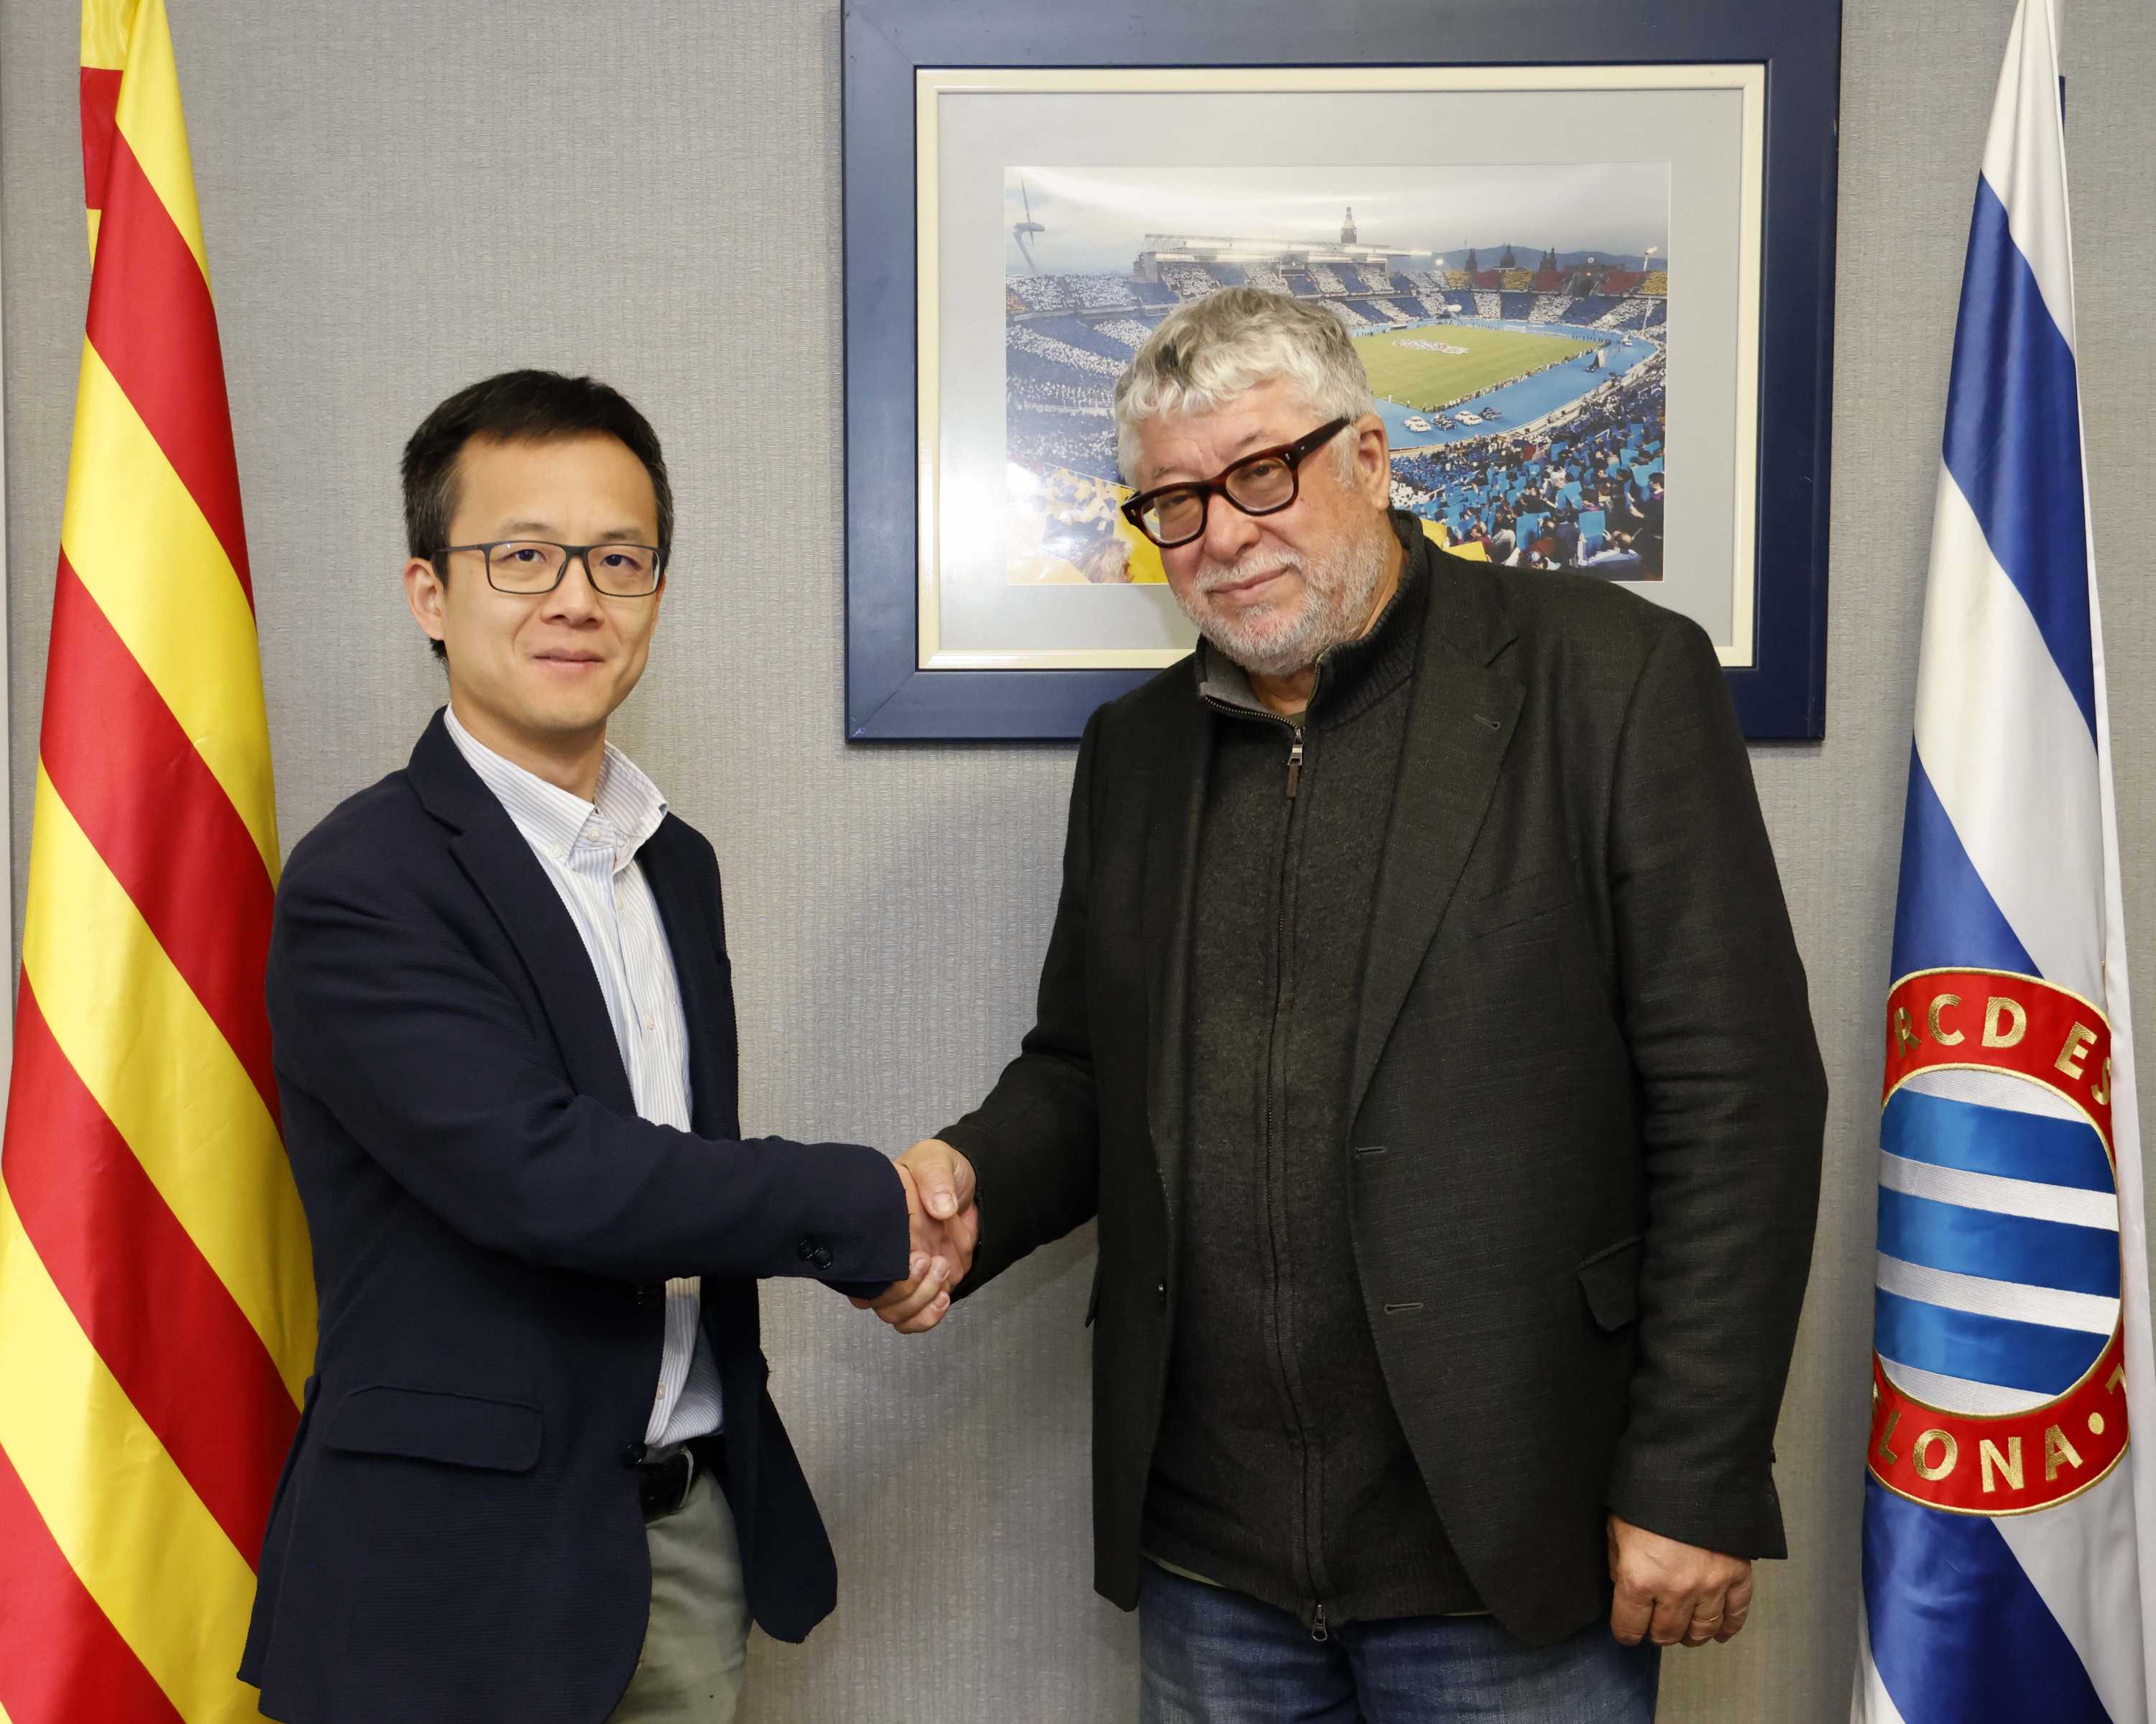 El Ajuntament de Cornellà y el RCD Espanyol estrechan su colaboración